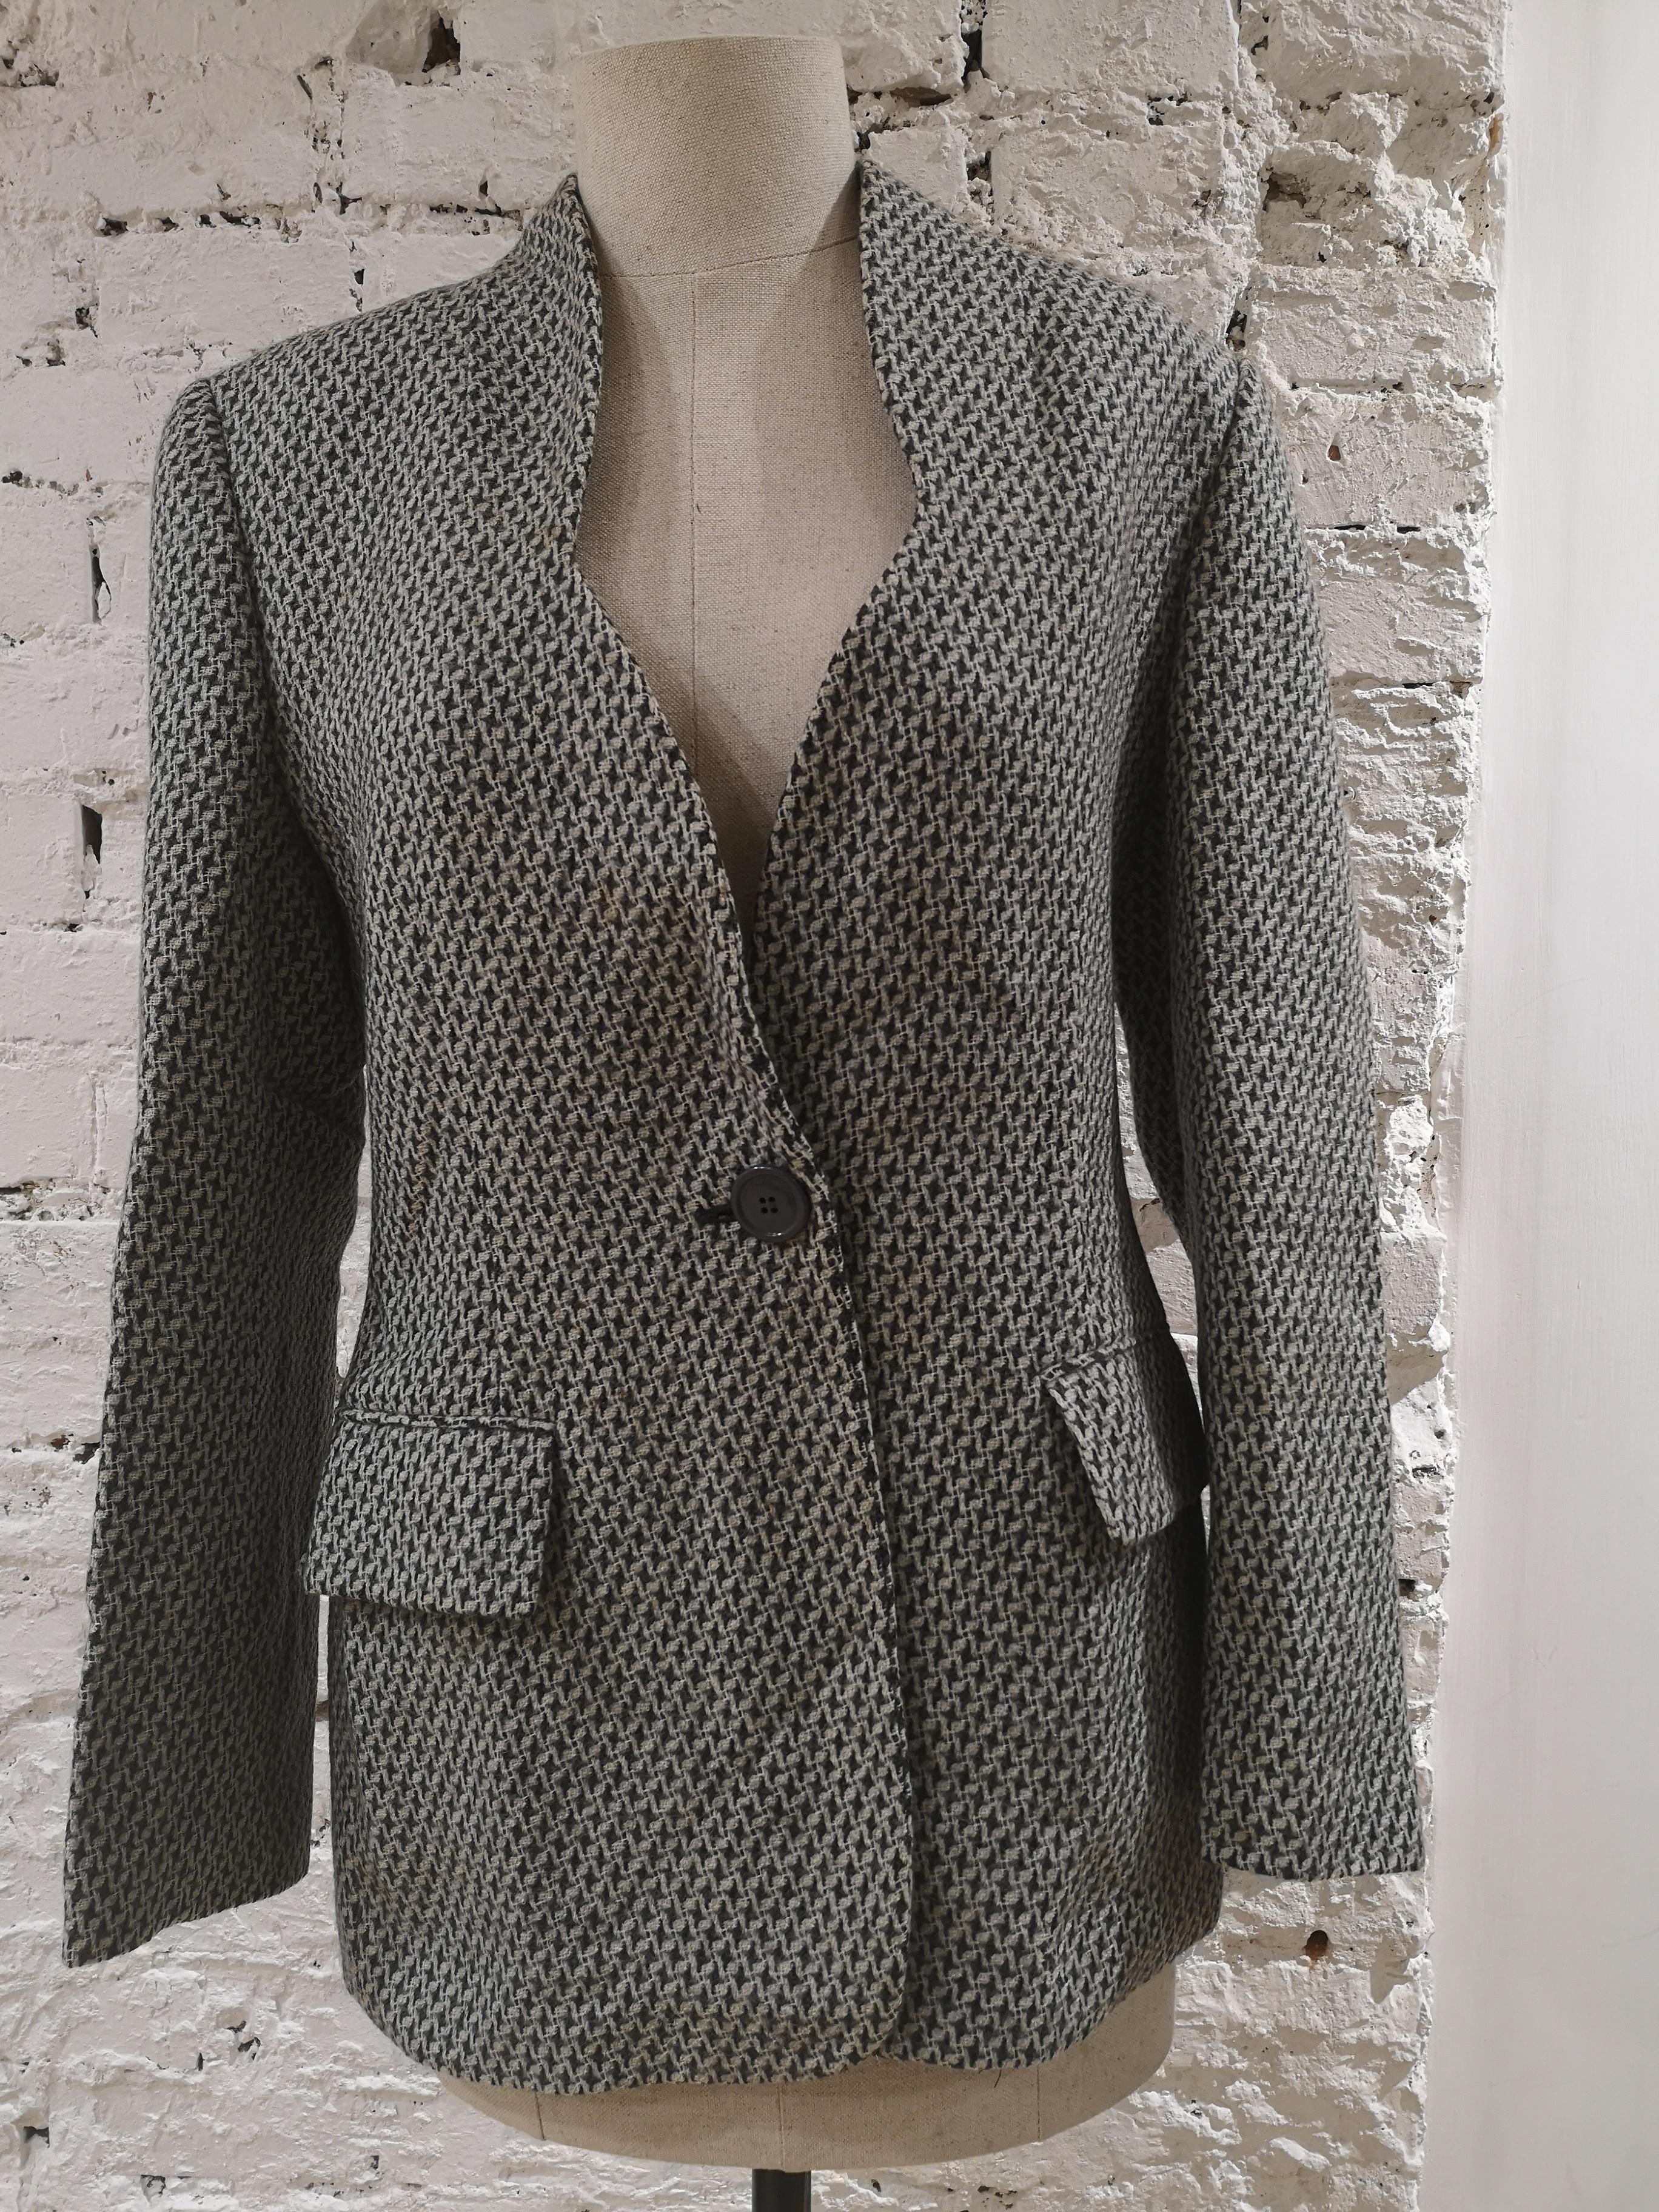 Gianfranco Ferre white grey blazer wool jacket
size 44 it